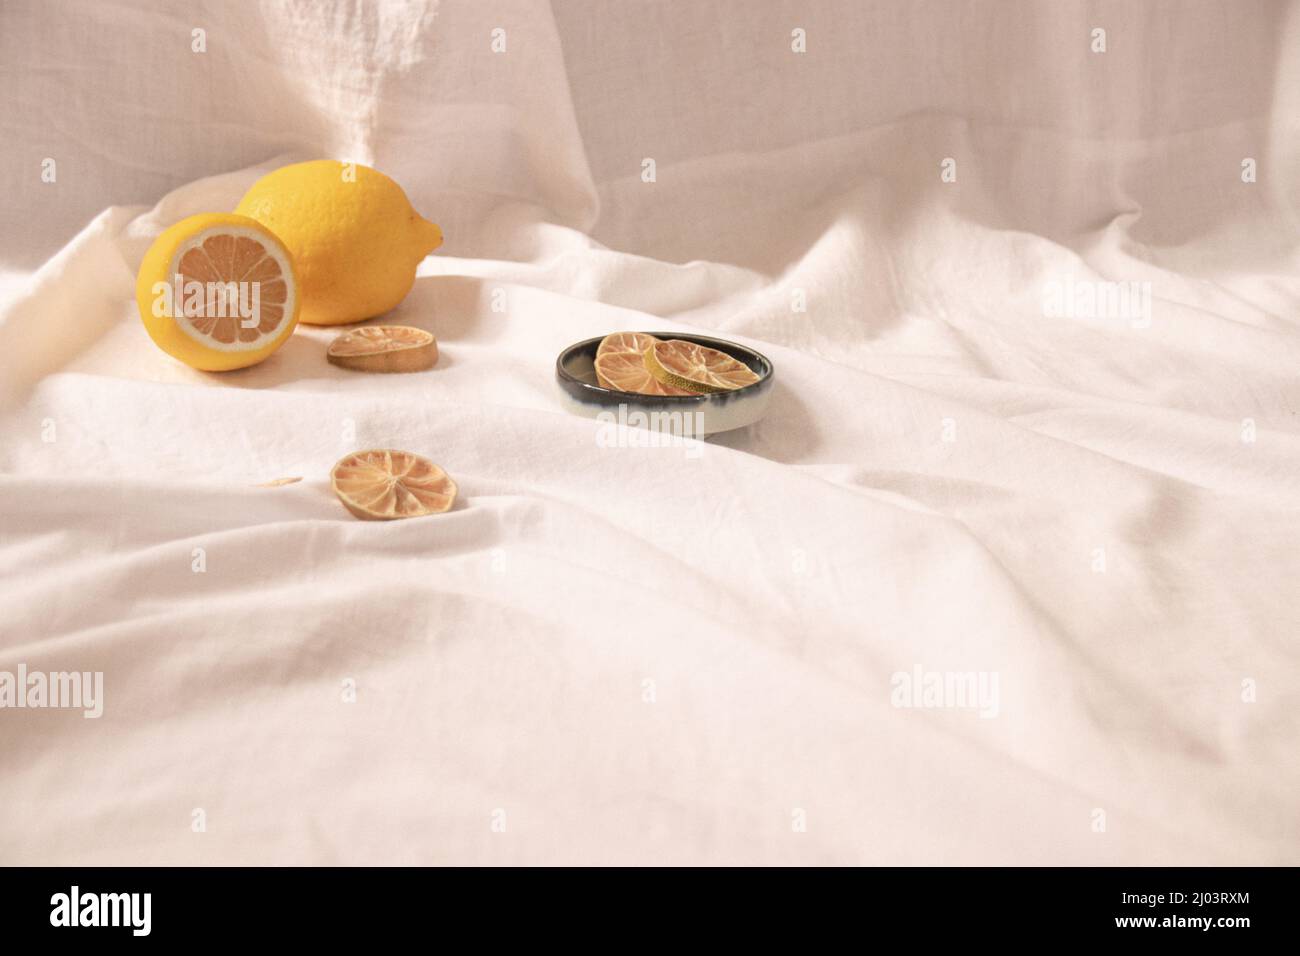 Vie fixe minimaliste de citrons frais et séchés montrant le concept de fraîcheur, esthétique d'été et vie saine et durable Banque D'Images